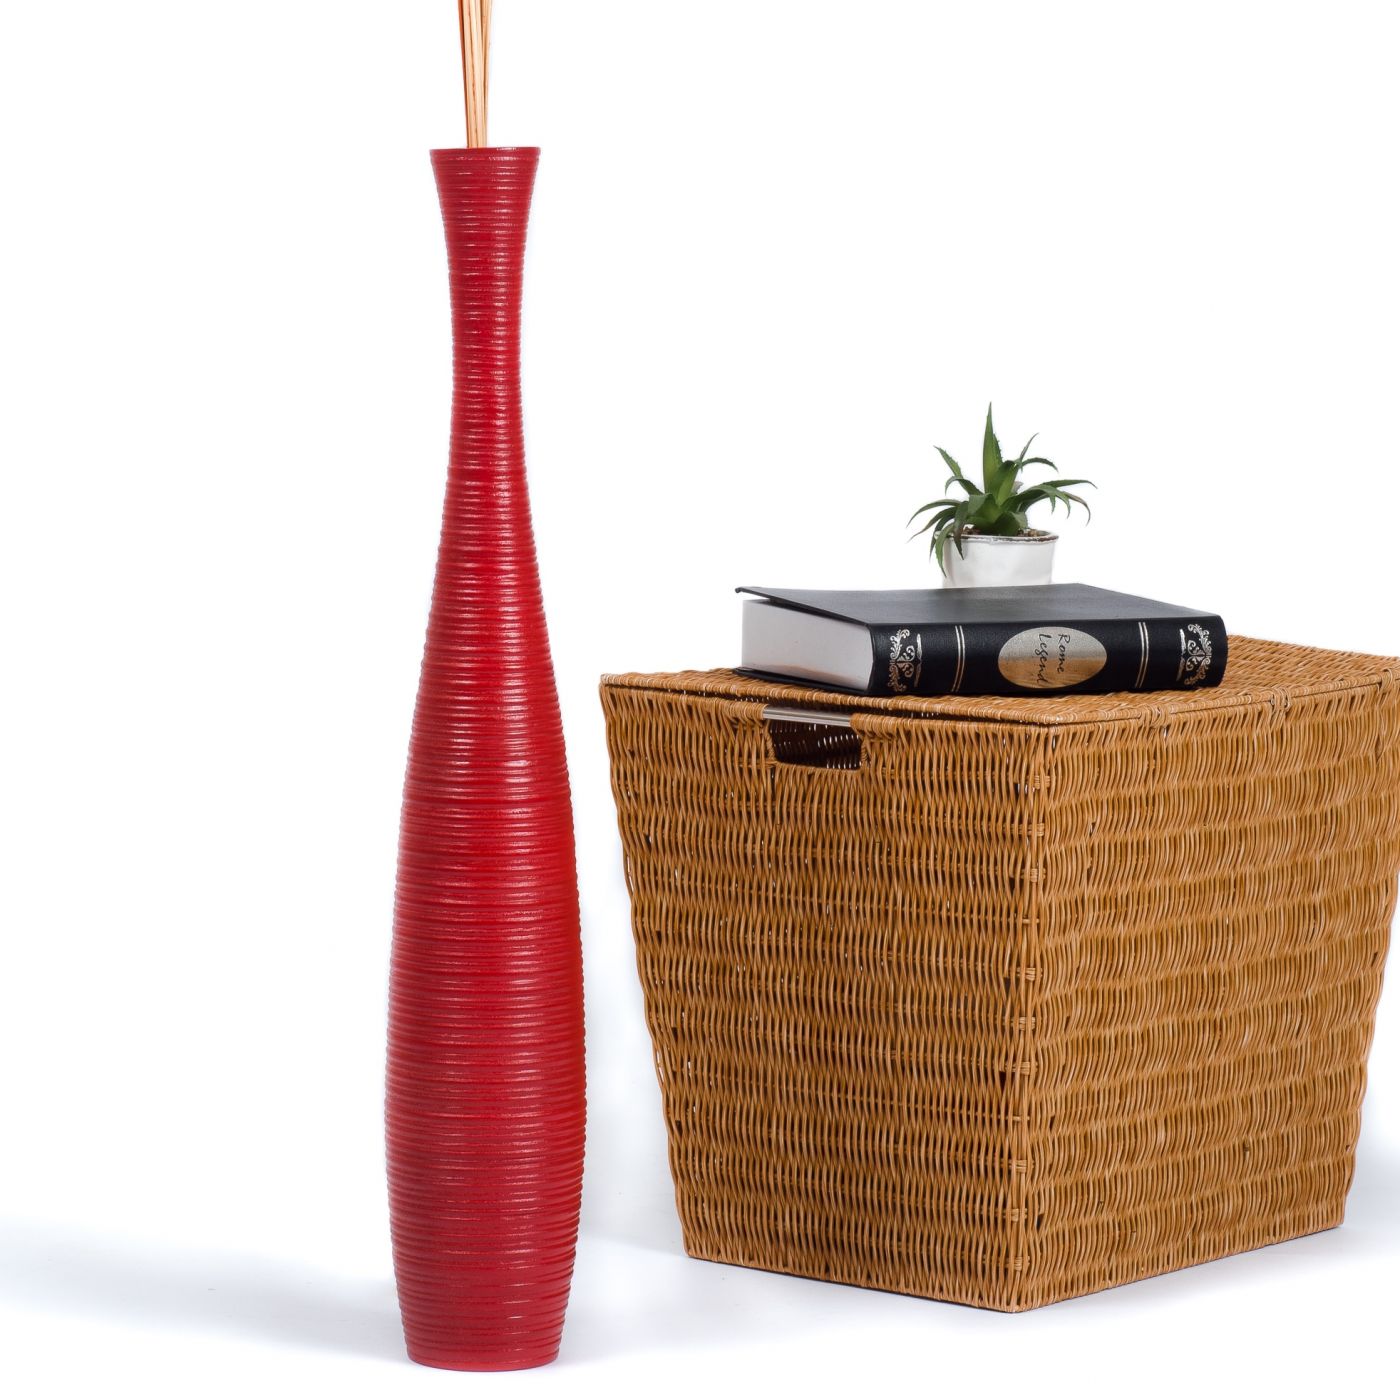 Leewadee Grande Vaso da Terra per Rami Decorativi Vaso Alto da Interno 75 cm Rosso Legno di Mango 